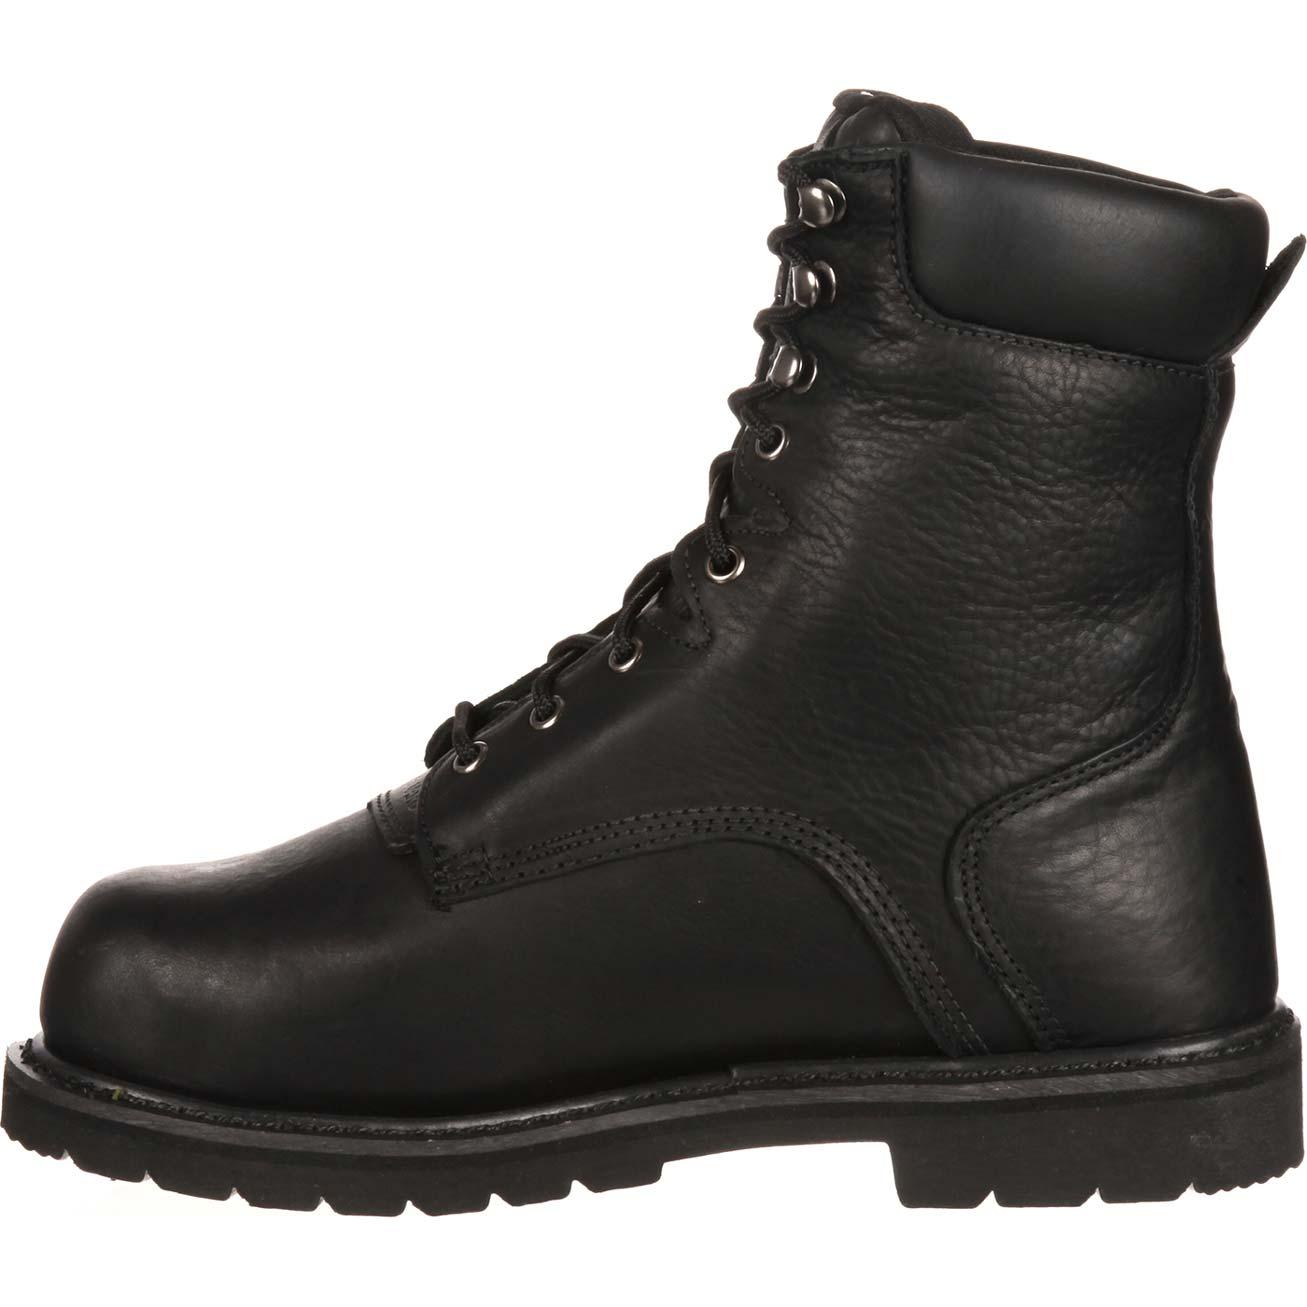 Lehigh Safety Shoes Unisex Steel Toe Internal Met Guard Waterproof Work ...